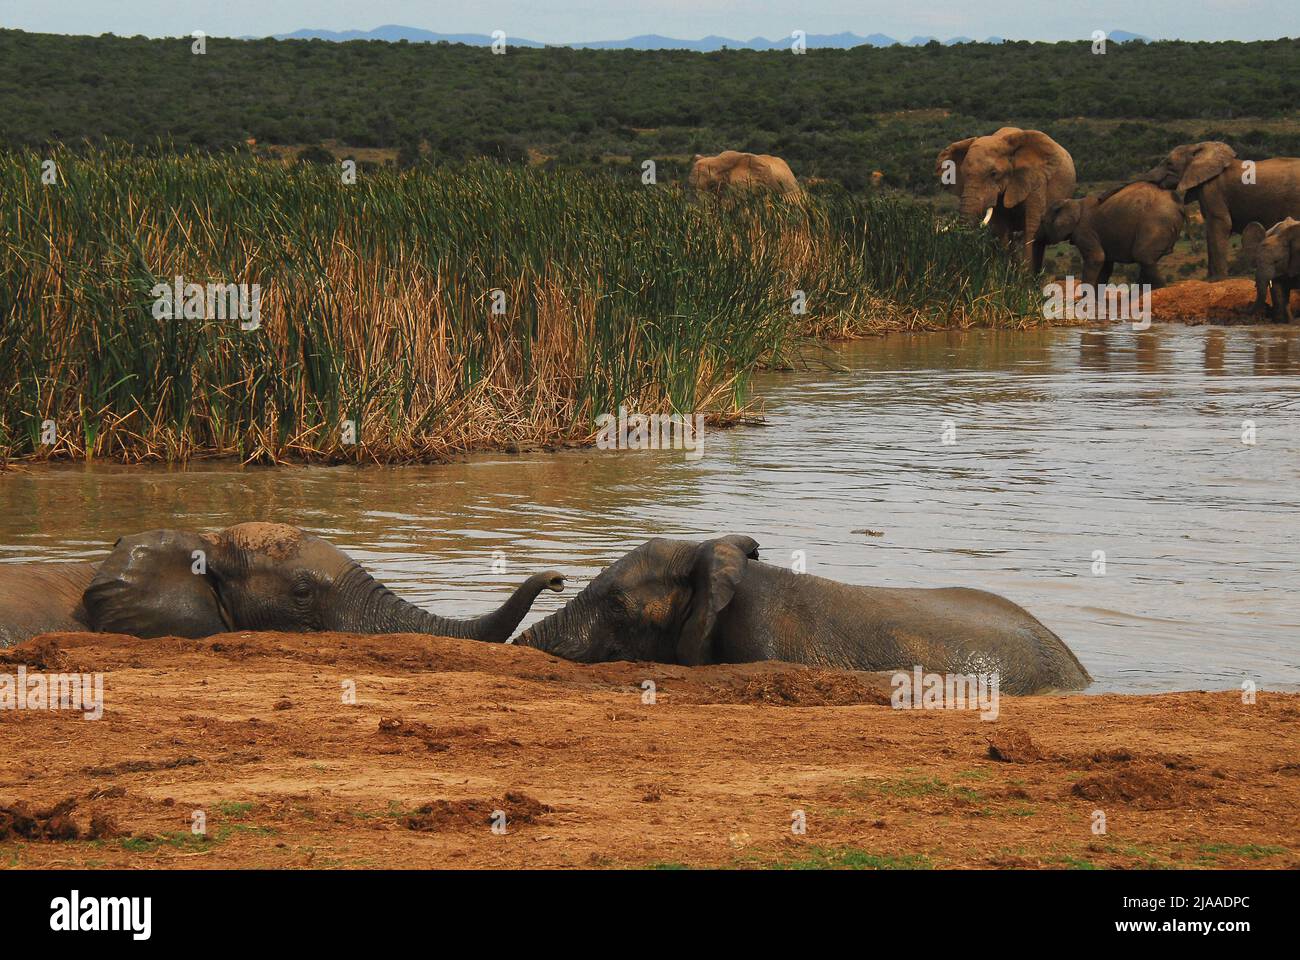 Wildtierszene an einem Wasserloch in der südafrikanischen Wildnis. Eine wundervolle Nahaufnahme einer Herde Elefanten, die schwimmen, spielen und baden. Stockfoto